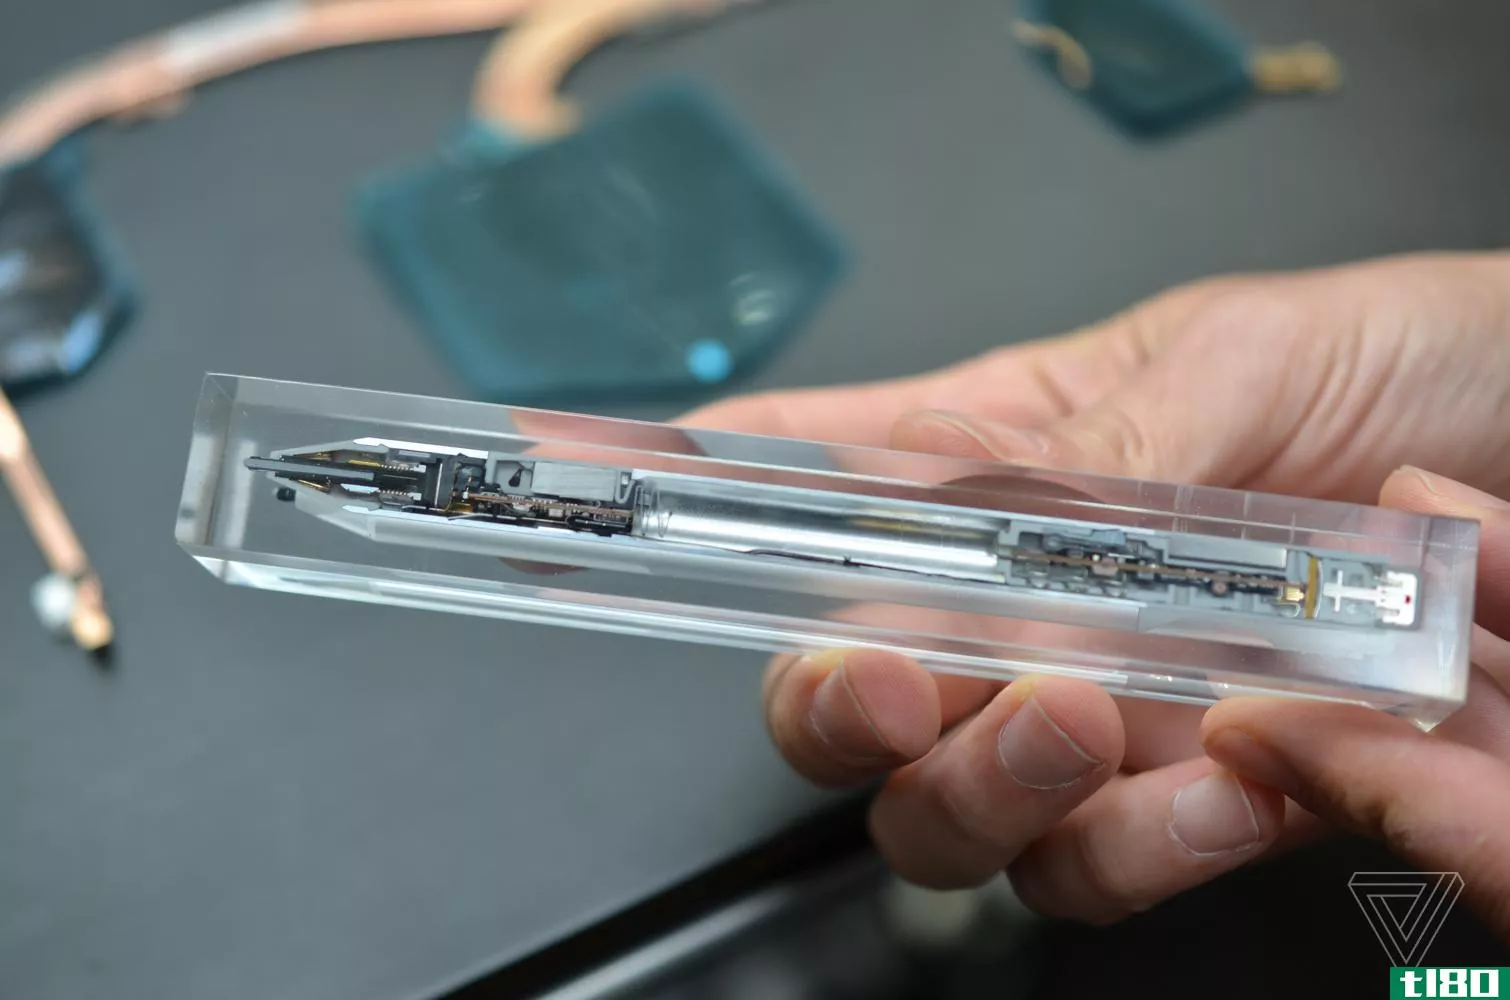 微软声称它的新型surface笔是世界上最快的